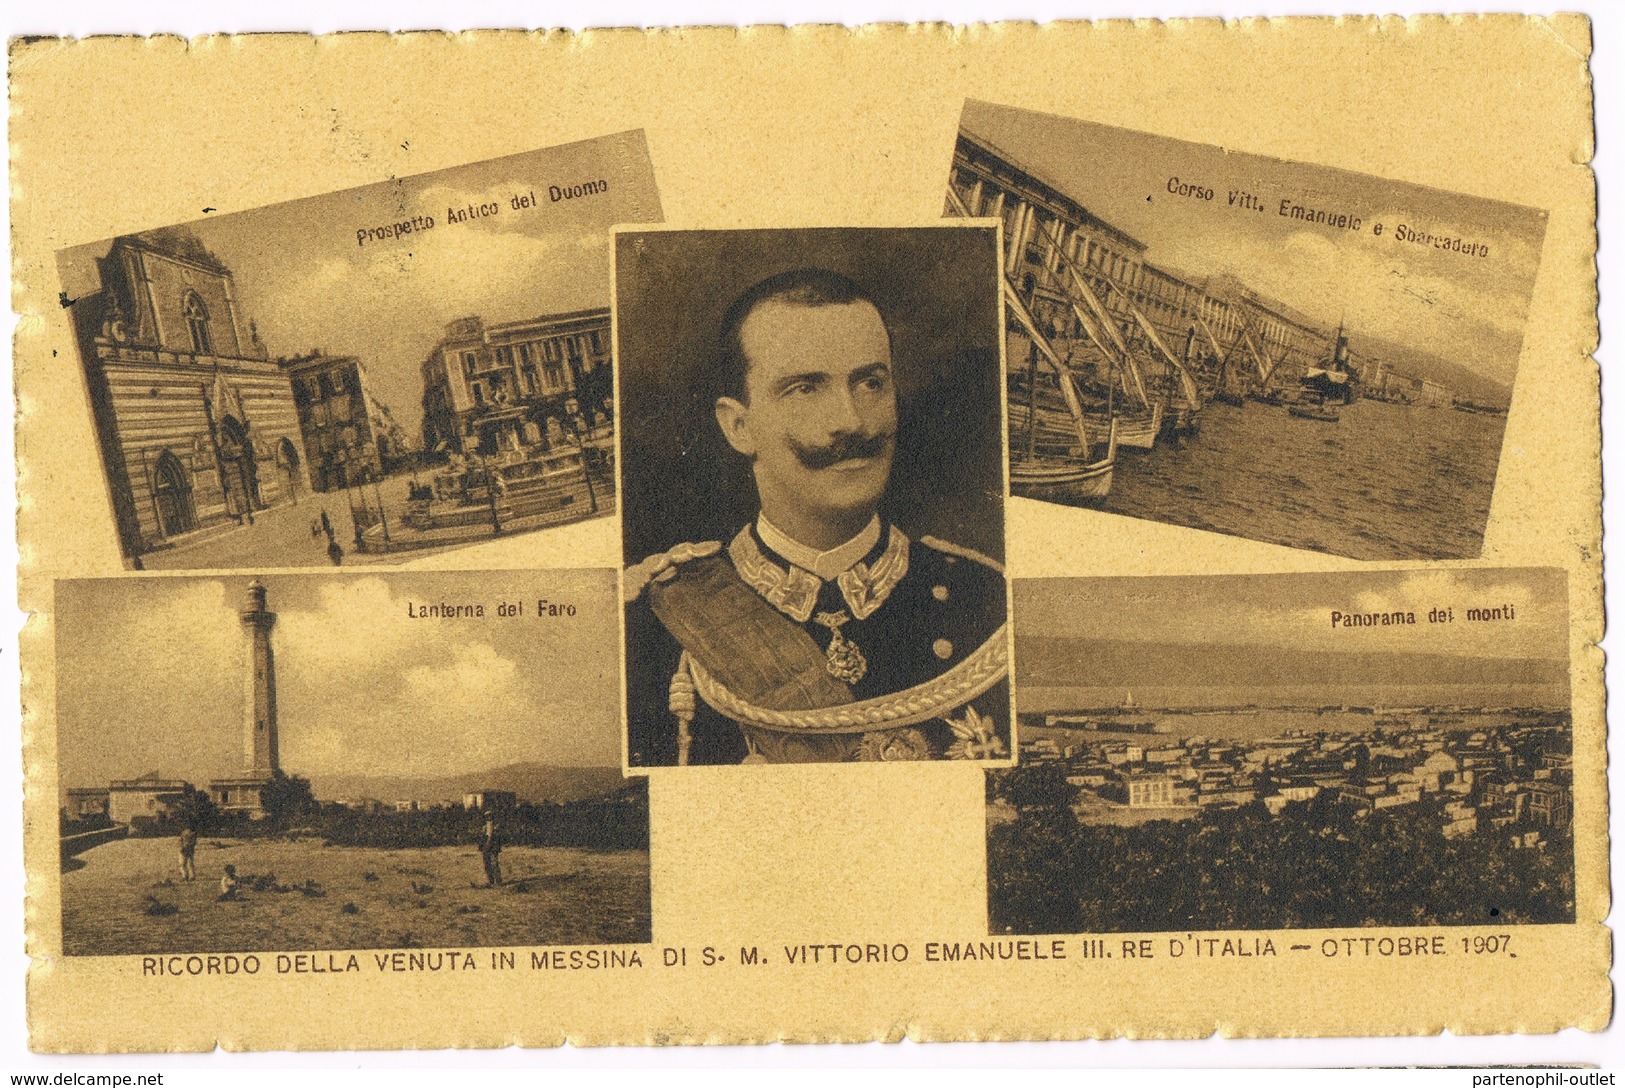 Cartolina - Postcard / Viaggiata - Sent / Ricordo Della Venuta In Messina Di S.M. Vittorio Emanuele III — Ottobre 1907 - Messina